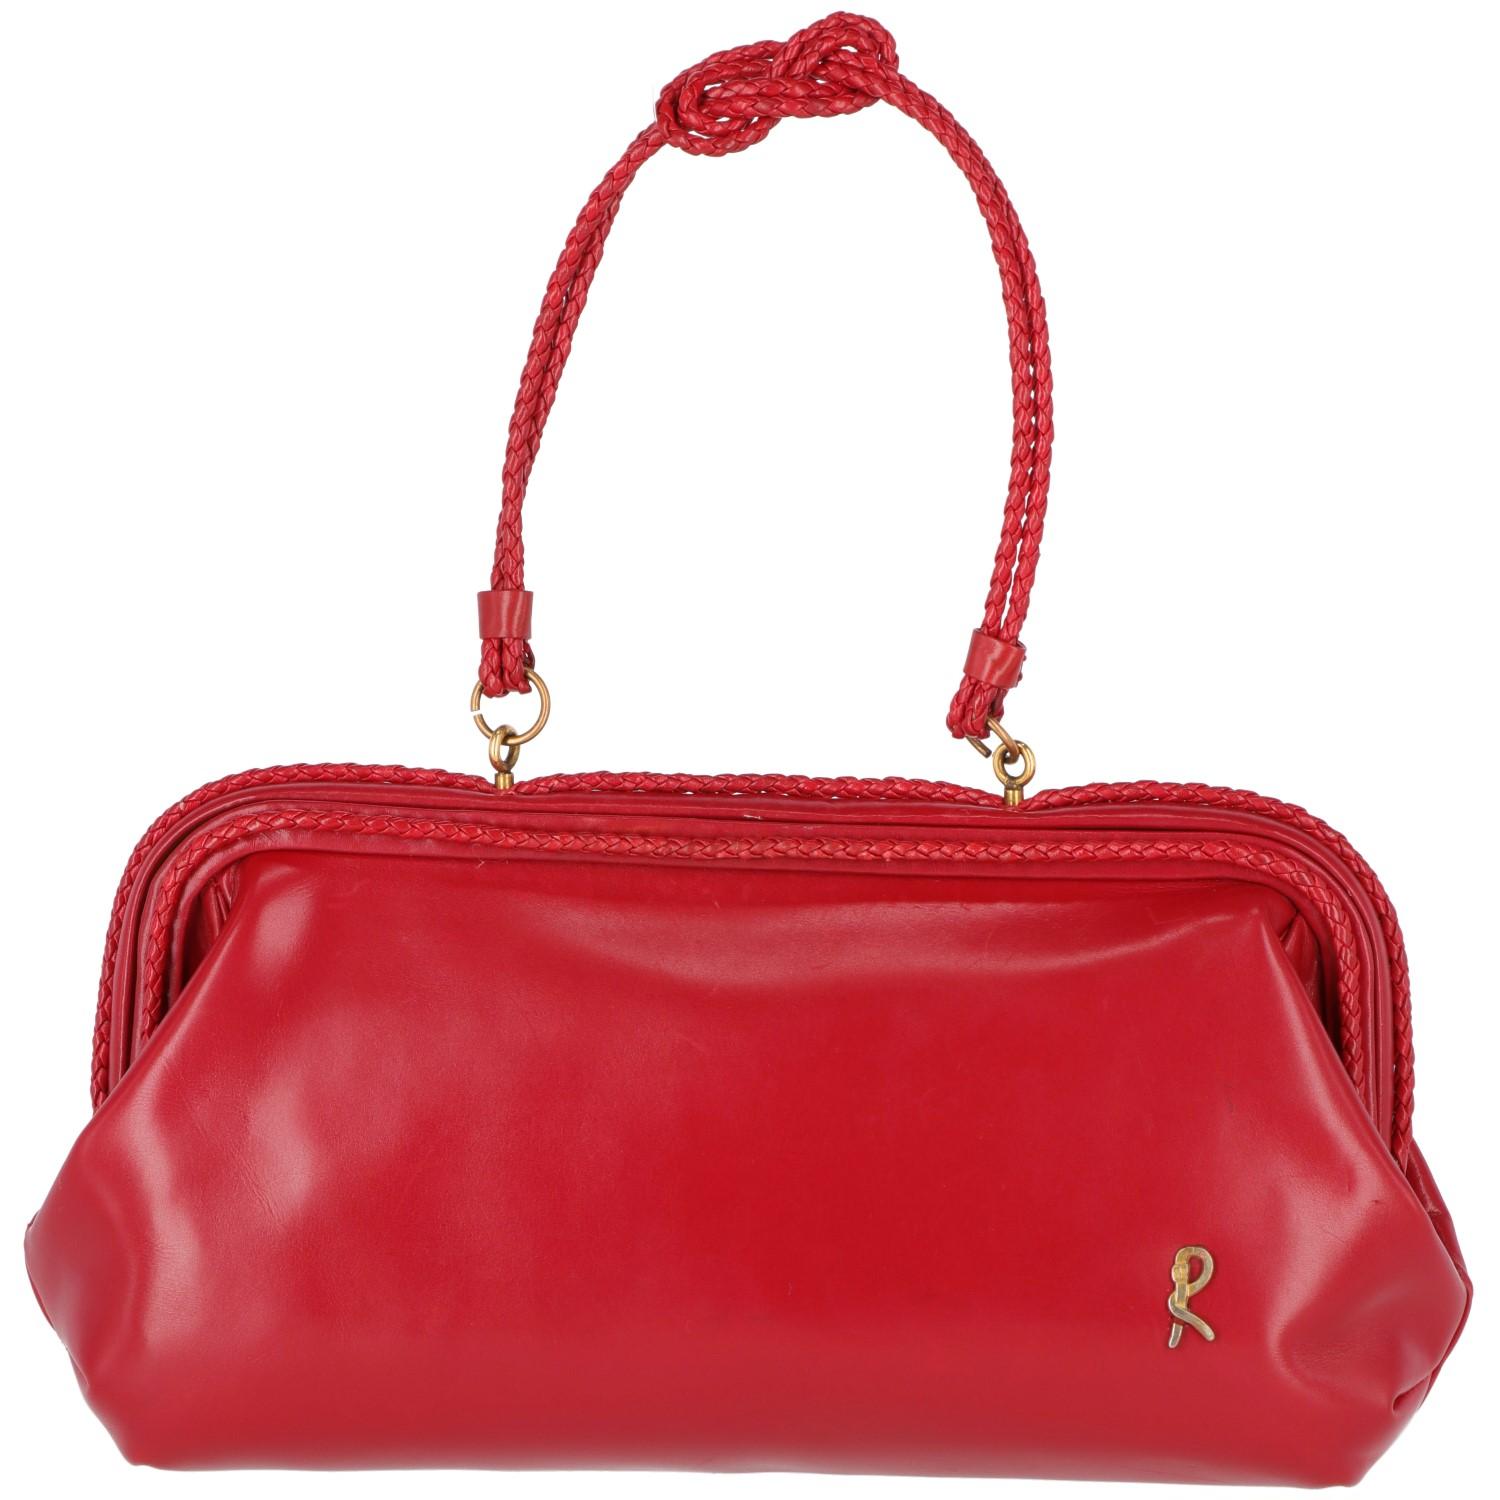 1960s Roberta di Camerino red bag 